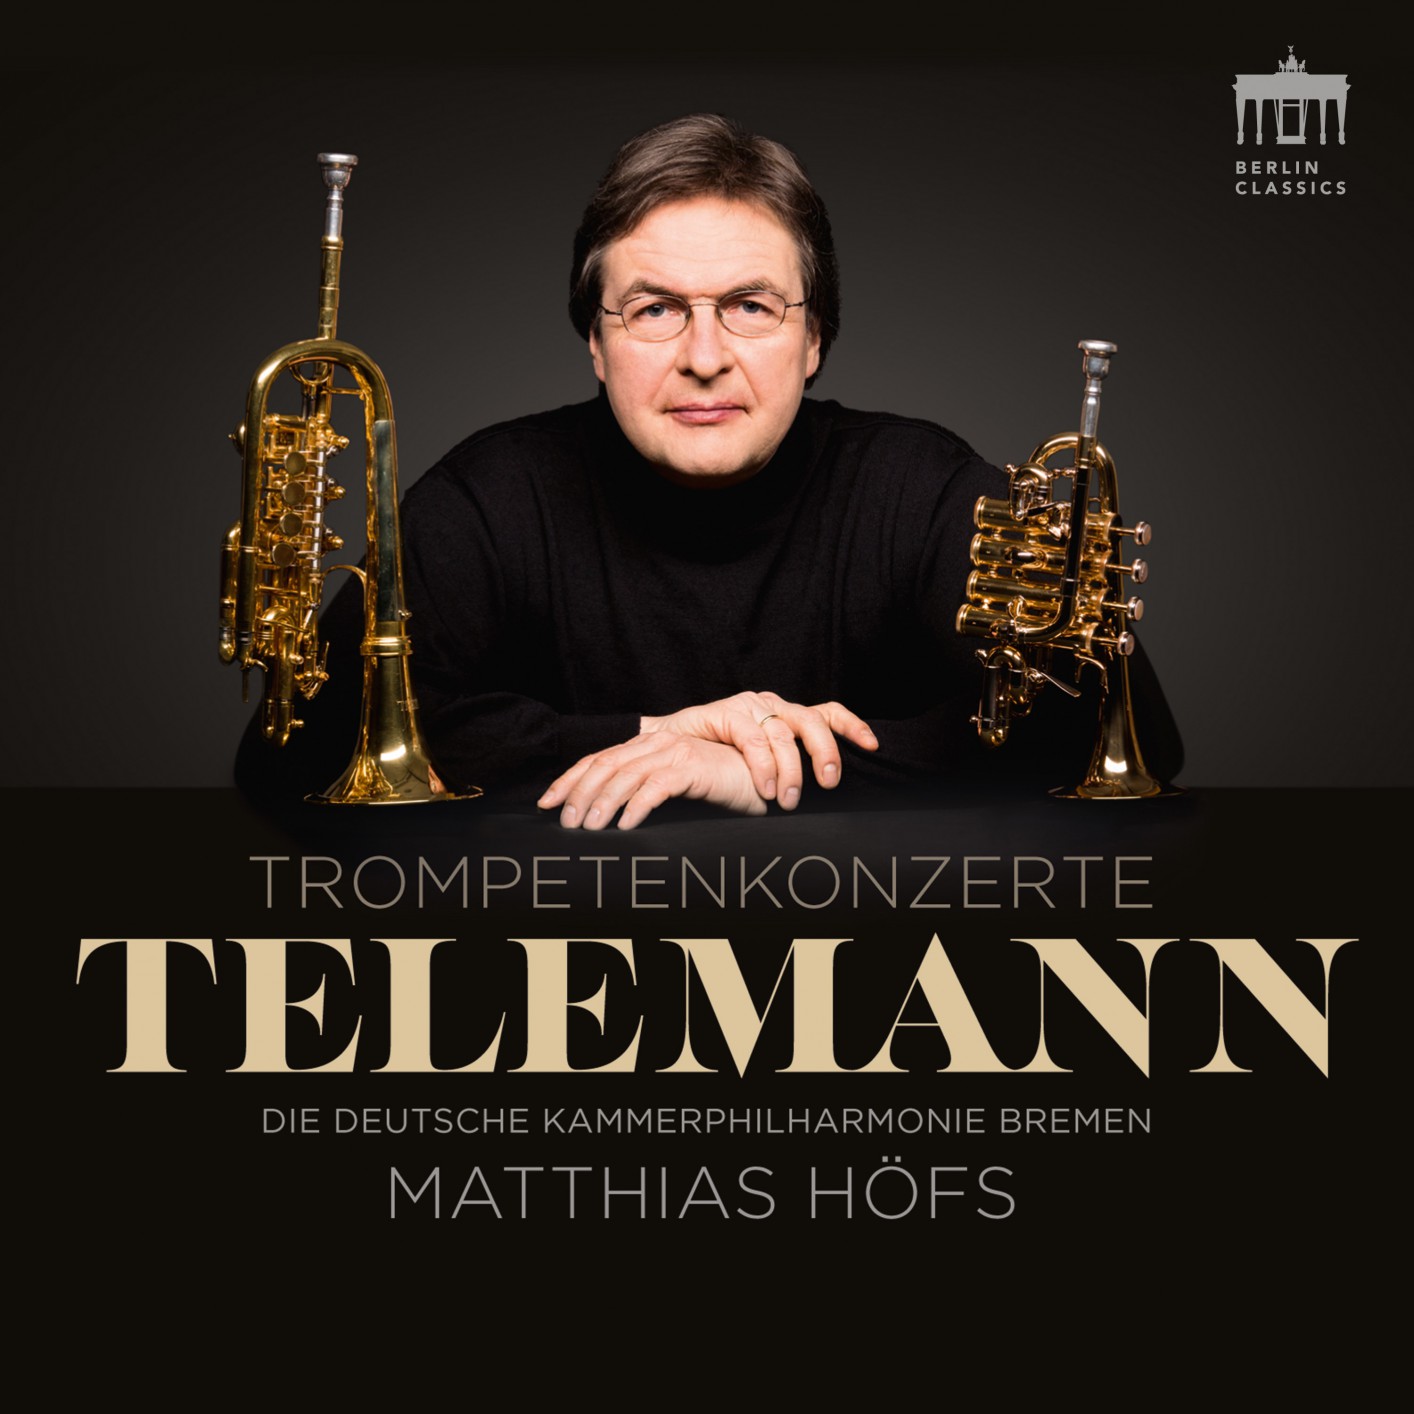 Die Deutsche Kammerphilharmonie Bremen & Matthias Hofs - Telemann Trompetenkonzerte (2017) [FLAC 24bit/96kHz]